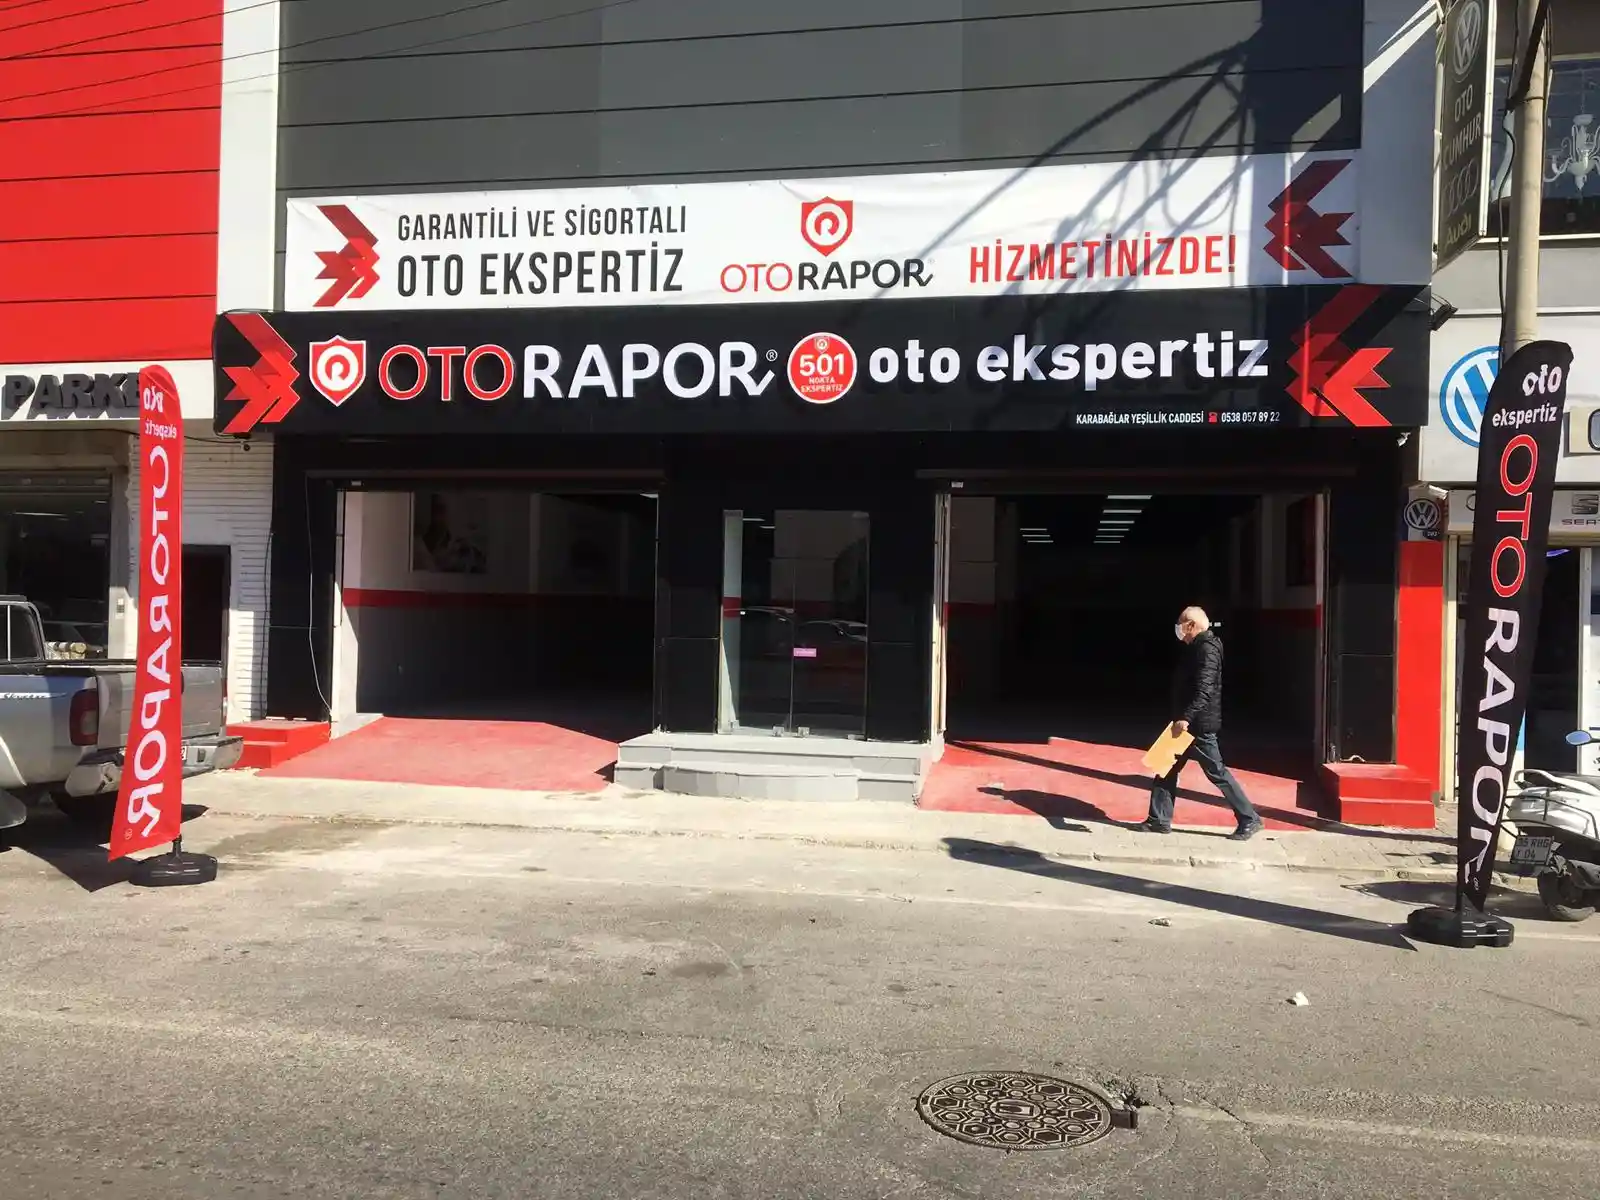 Otorapor İzmir Karabağlar Yeşillik Caddesi Oto Ekspertiz